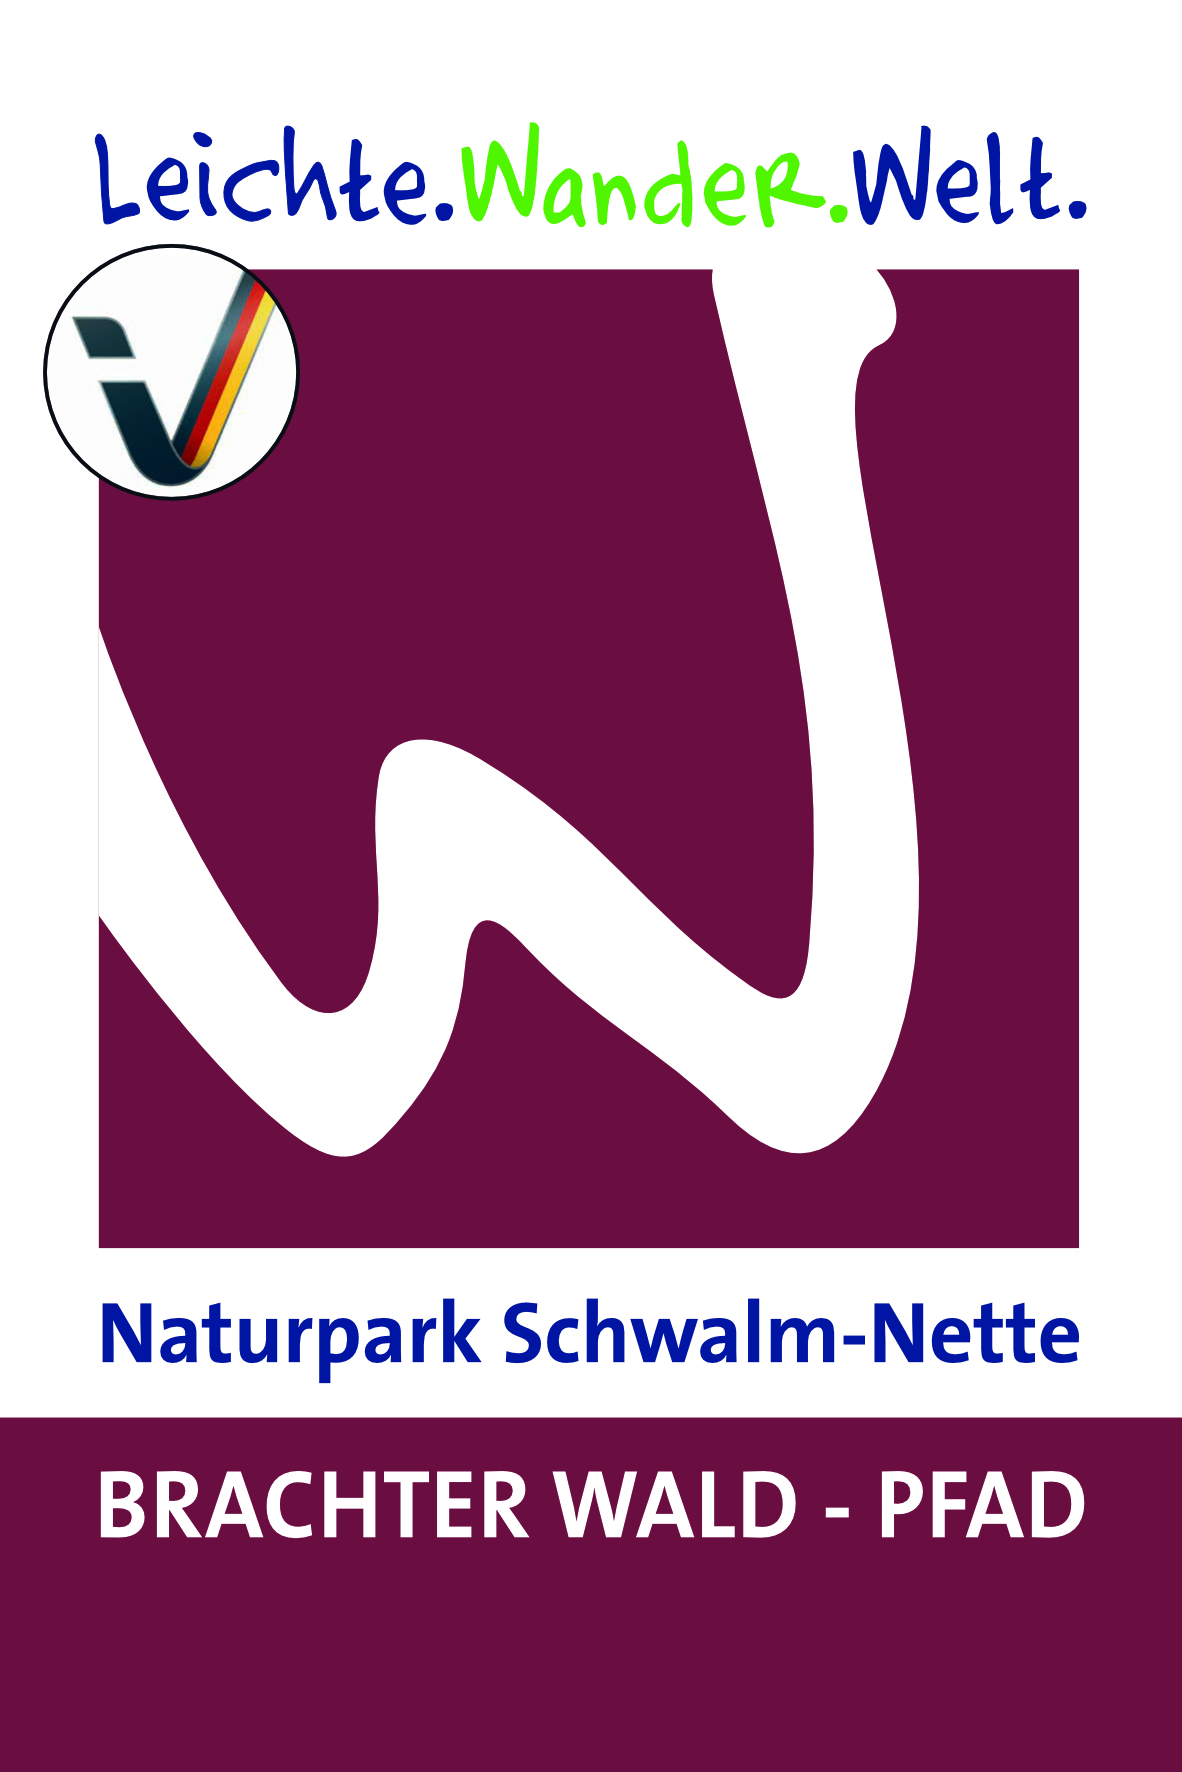 Naturpark Schwalm-Nette Brachter Wald-Pfad - ©Guido Bonewitz